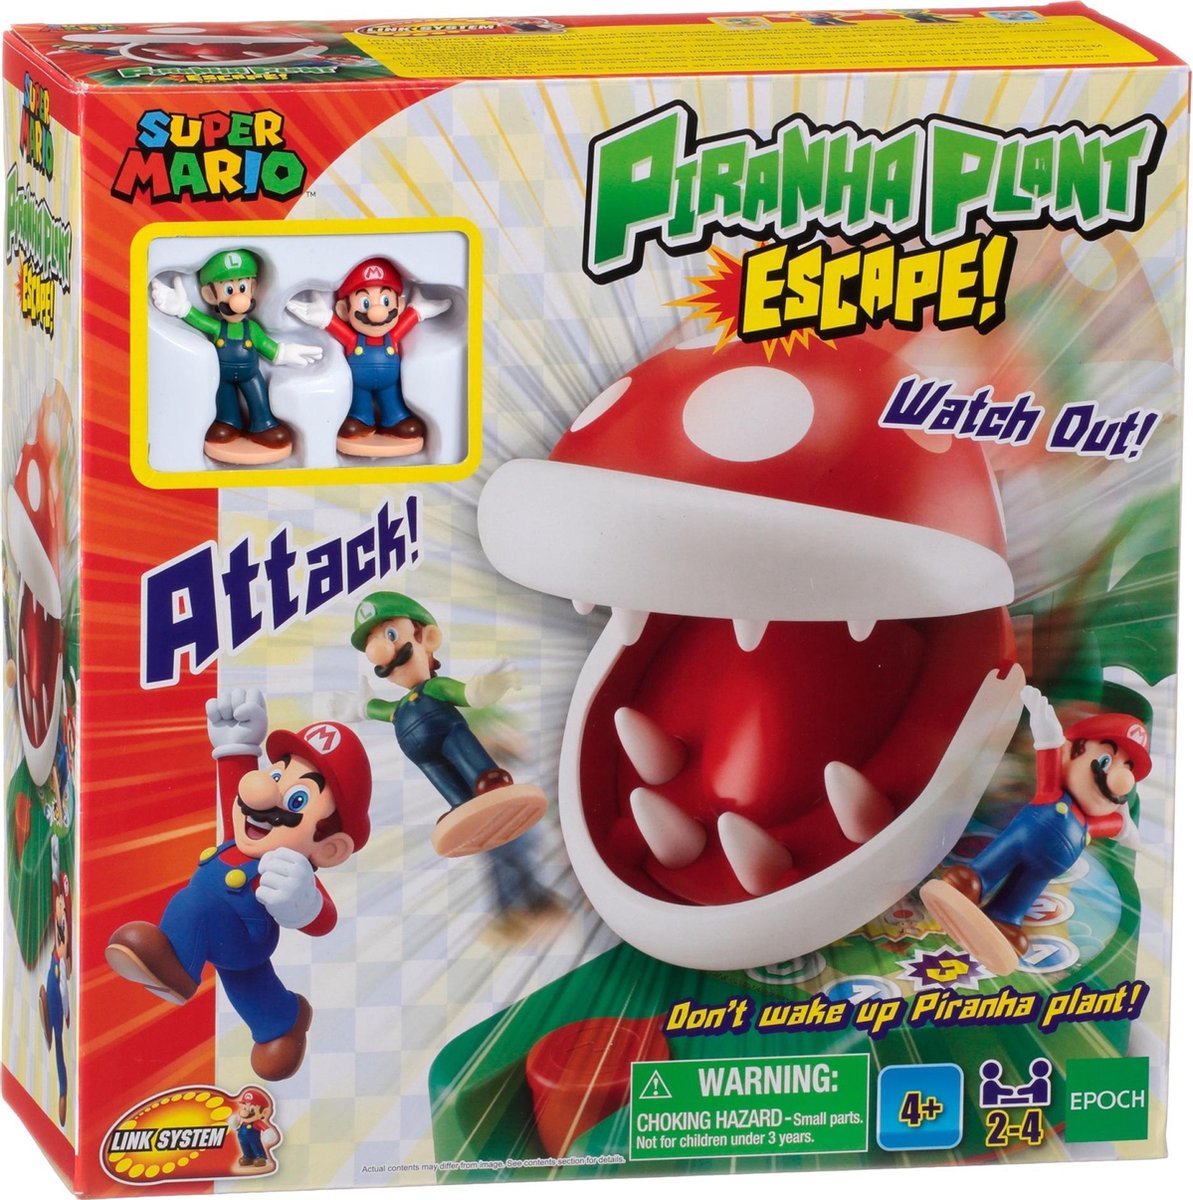 Super Mario Piranha Plant Escape - EPOCH Games